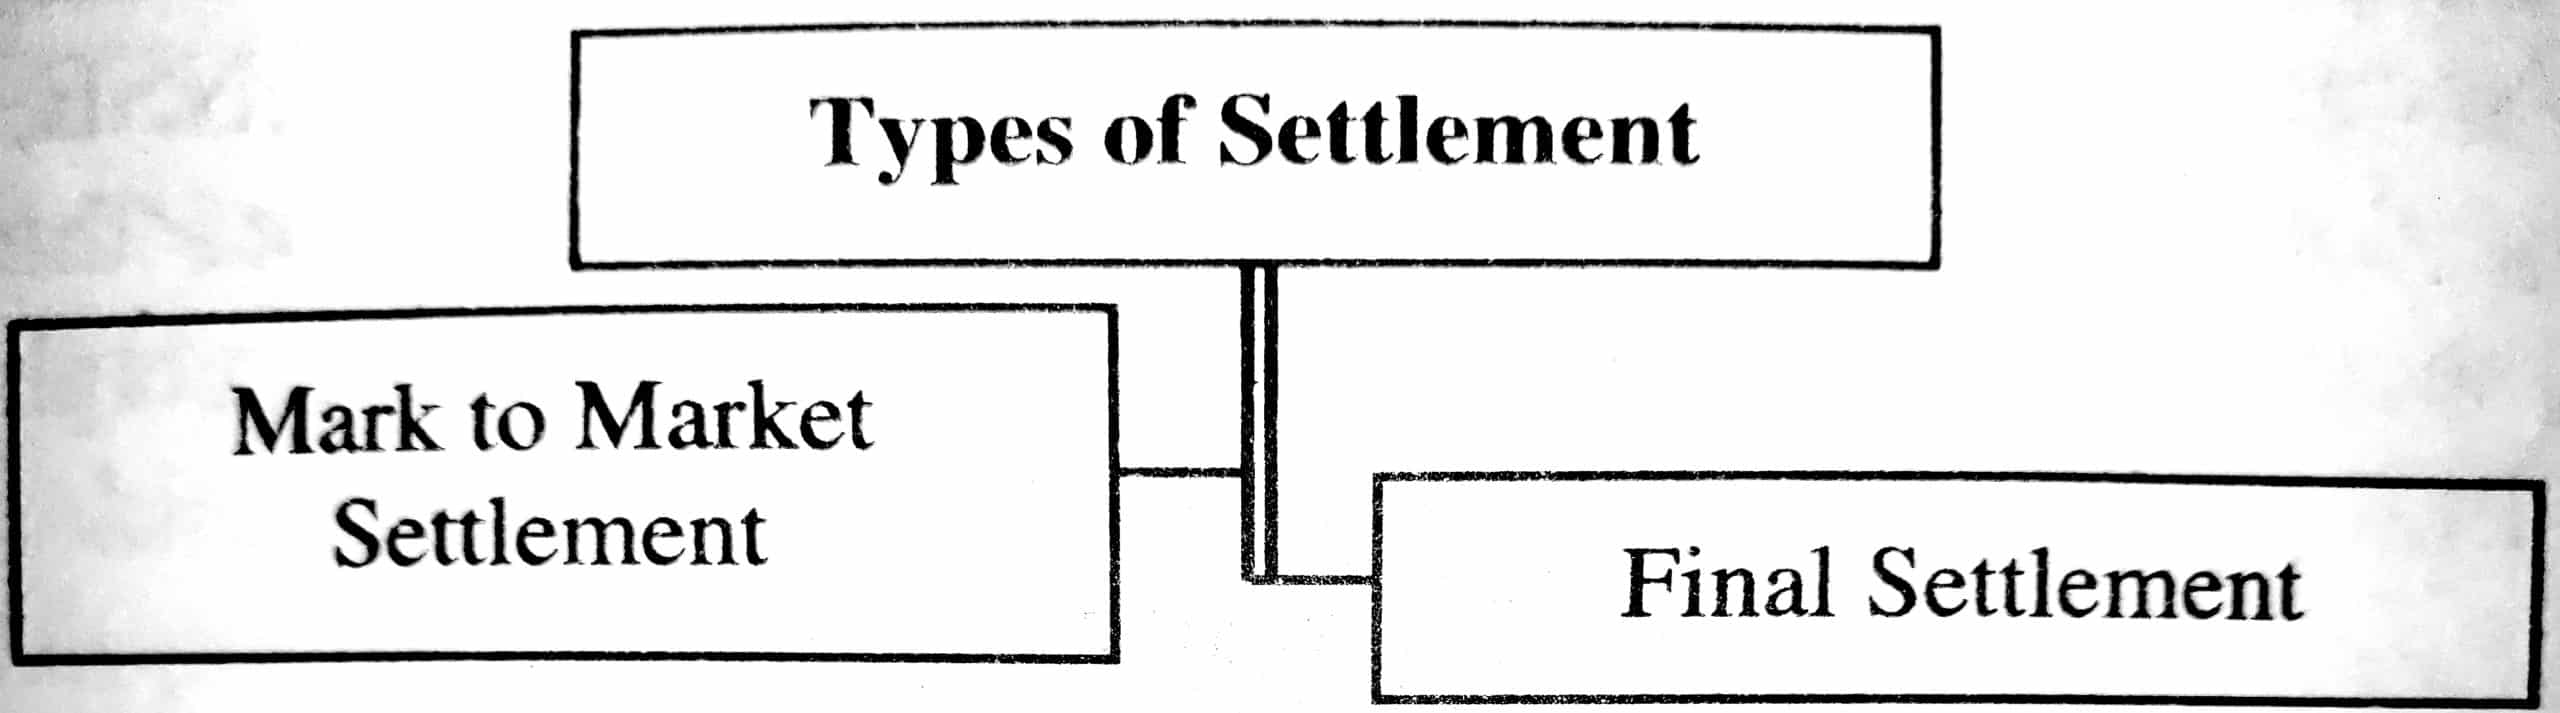 Types of Settlement